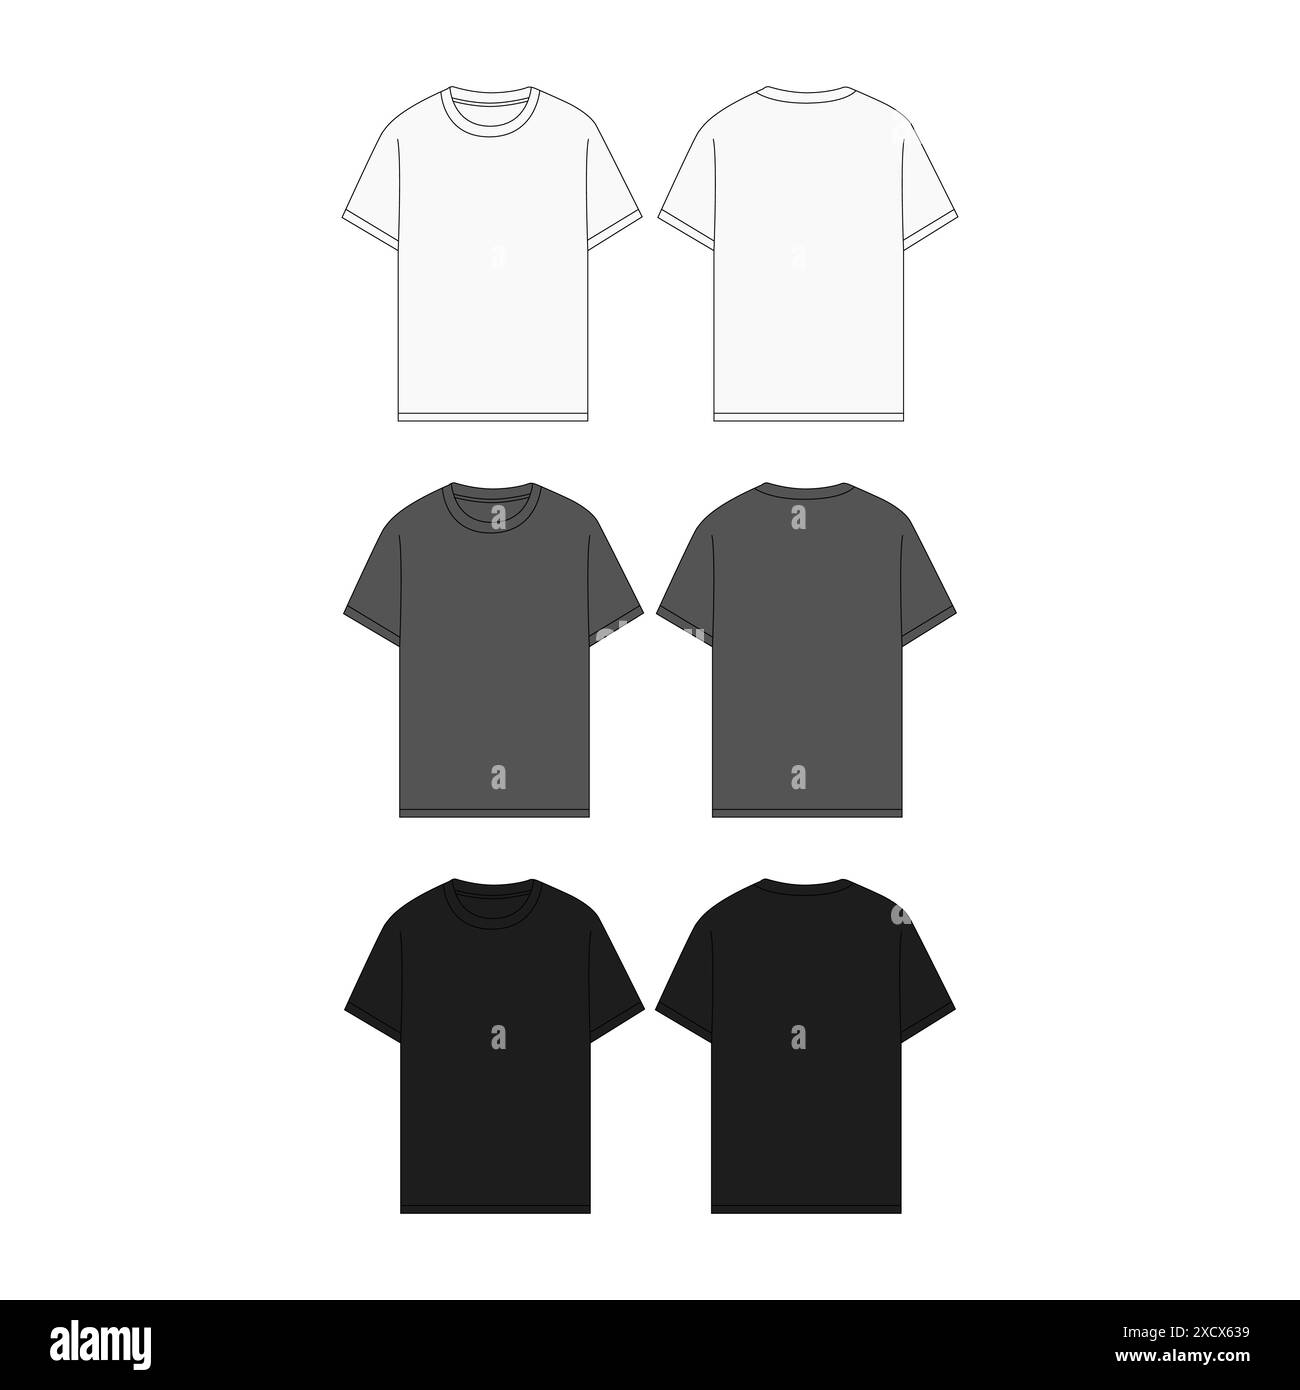 T-shirt nera maschio Set Mockup Vista frontale retro modello di stampa in tessuto vuoto maglietta moda illustrazione abbigliamento Vector T-shirt nera maschile Illustrazione Vettoriale